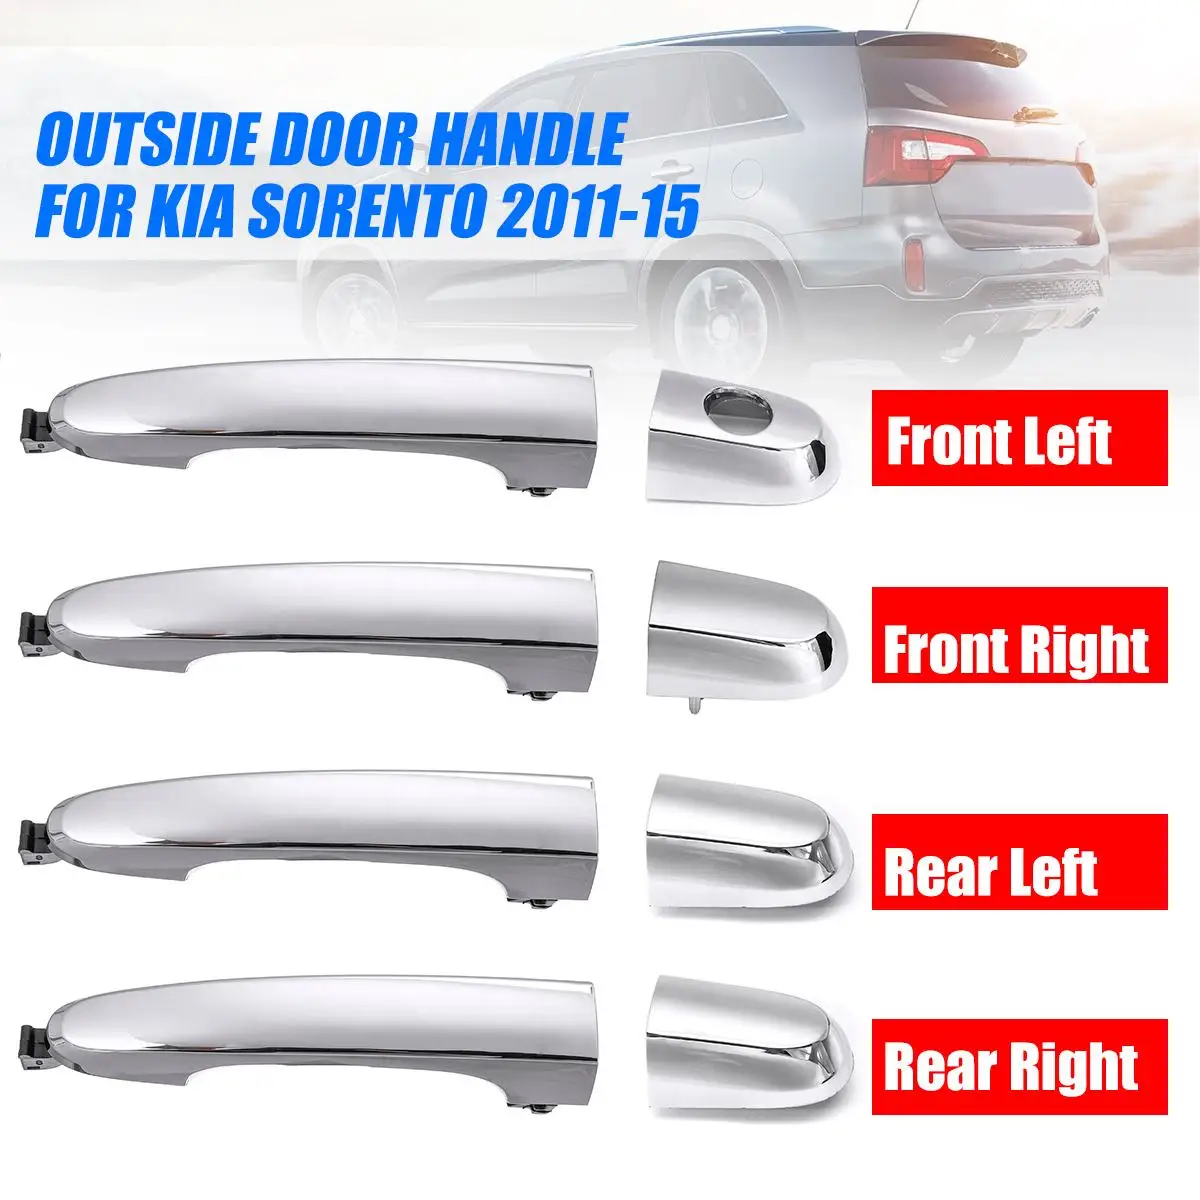 Front Left Exterior Door Handle for Kia Sorento 2011-2015 82652-2P010 Plastic